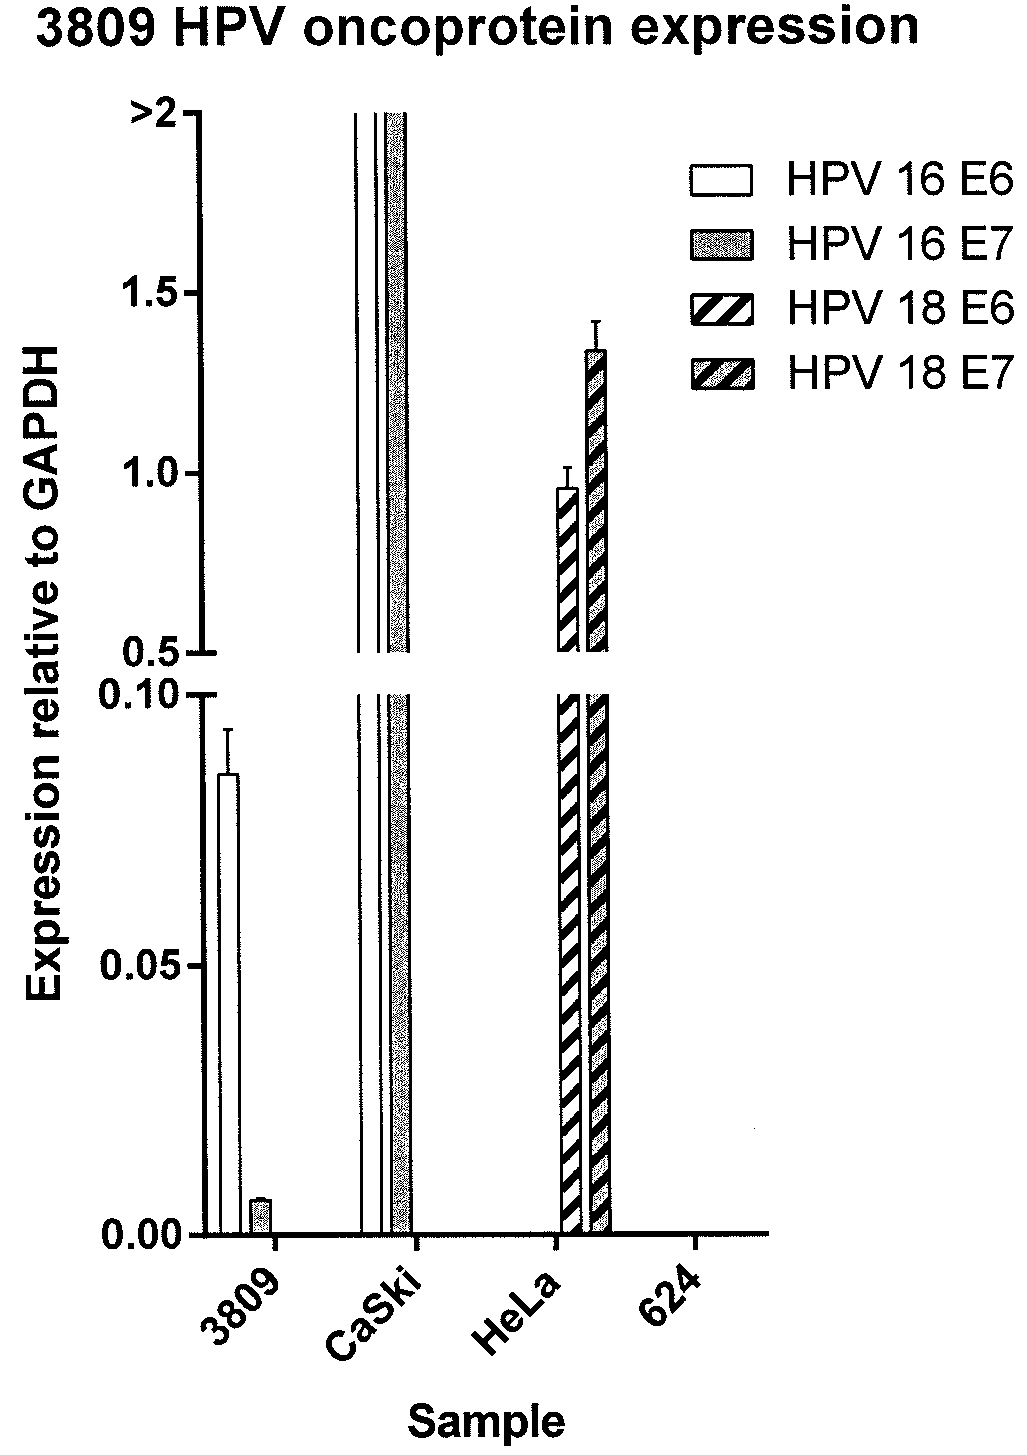 Anti-human papillomavirus 16 e6 t cell receptors